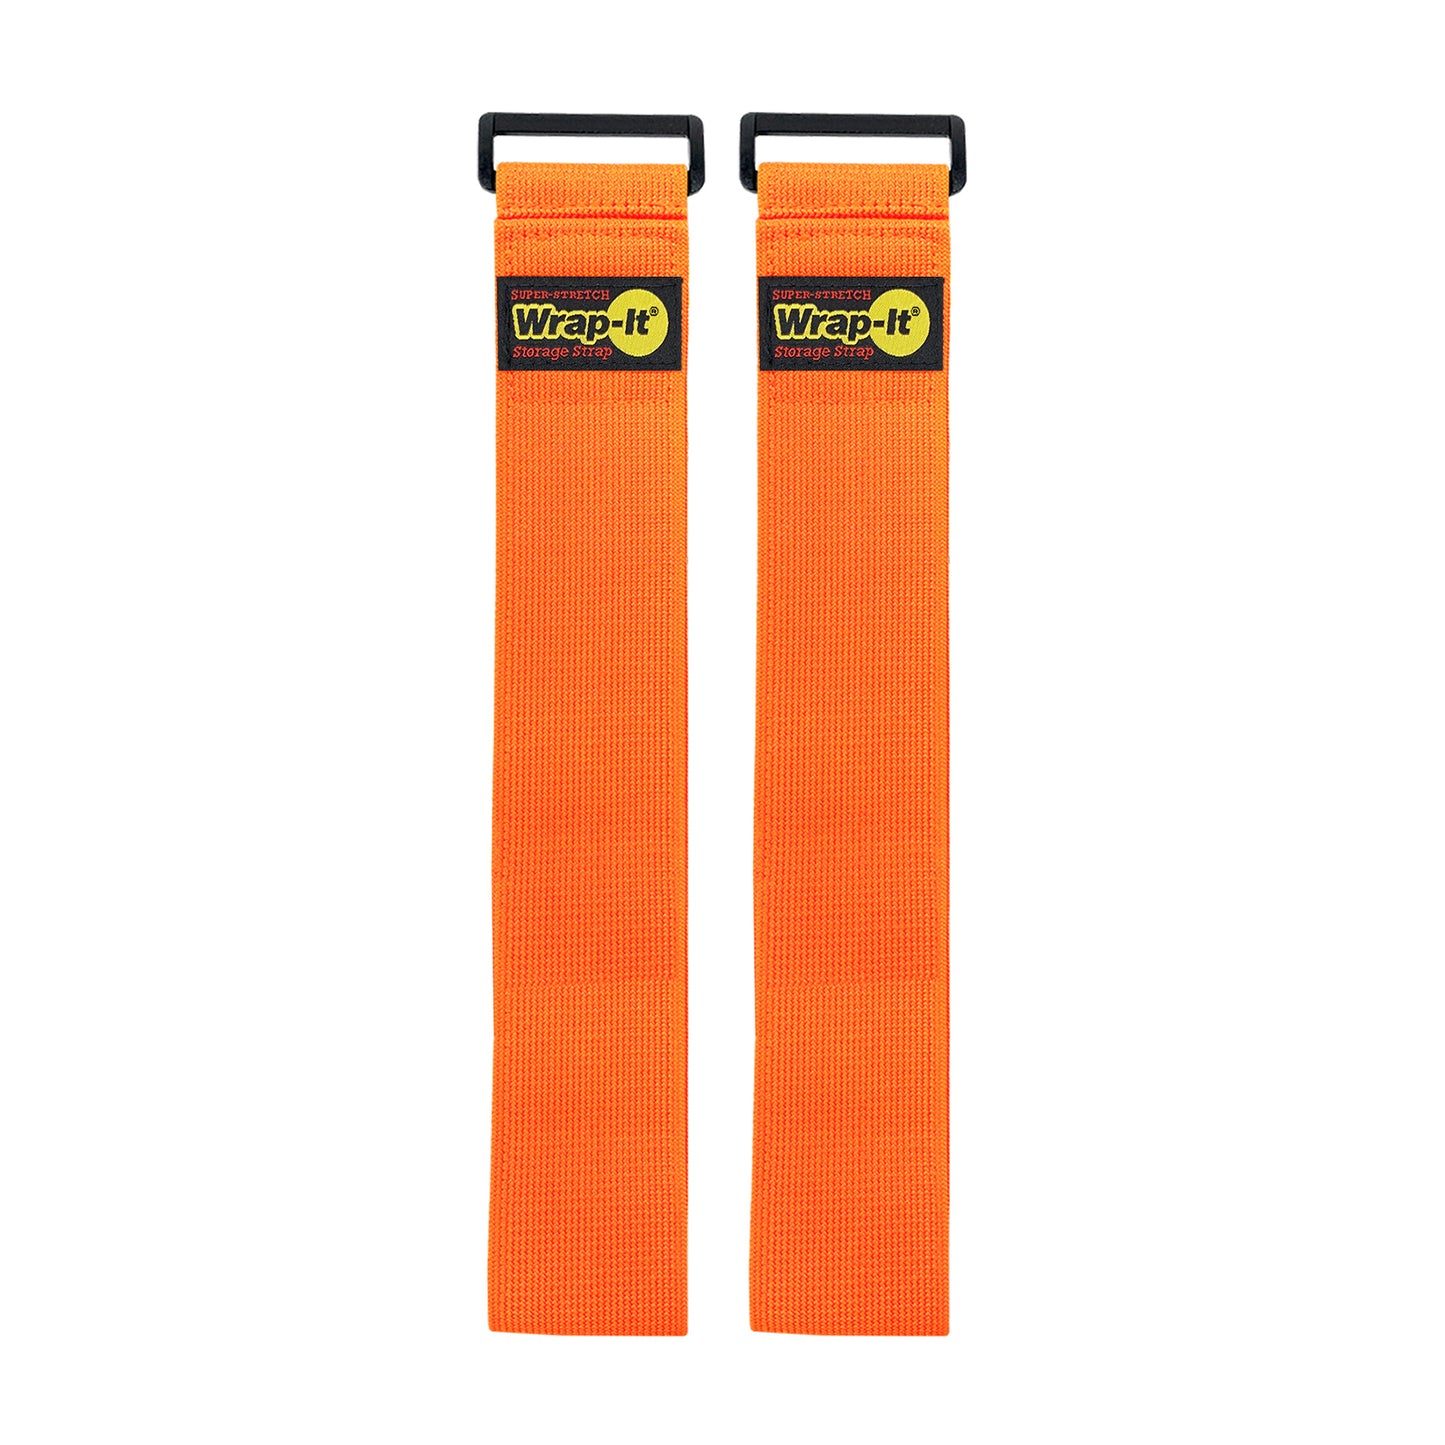 Super-Stretch Storage Straps - 24-in. (2-Pack) Blaze Orange